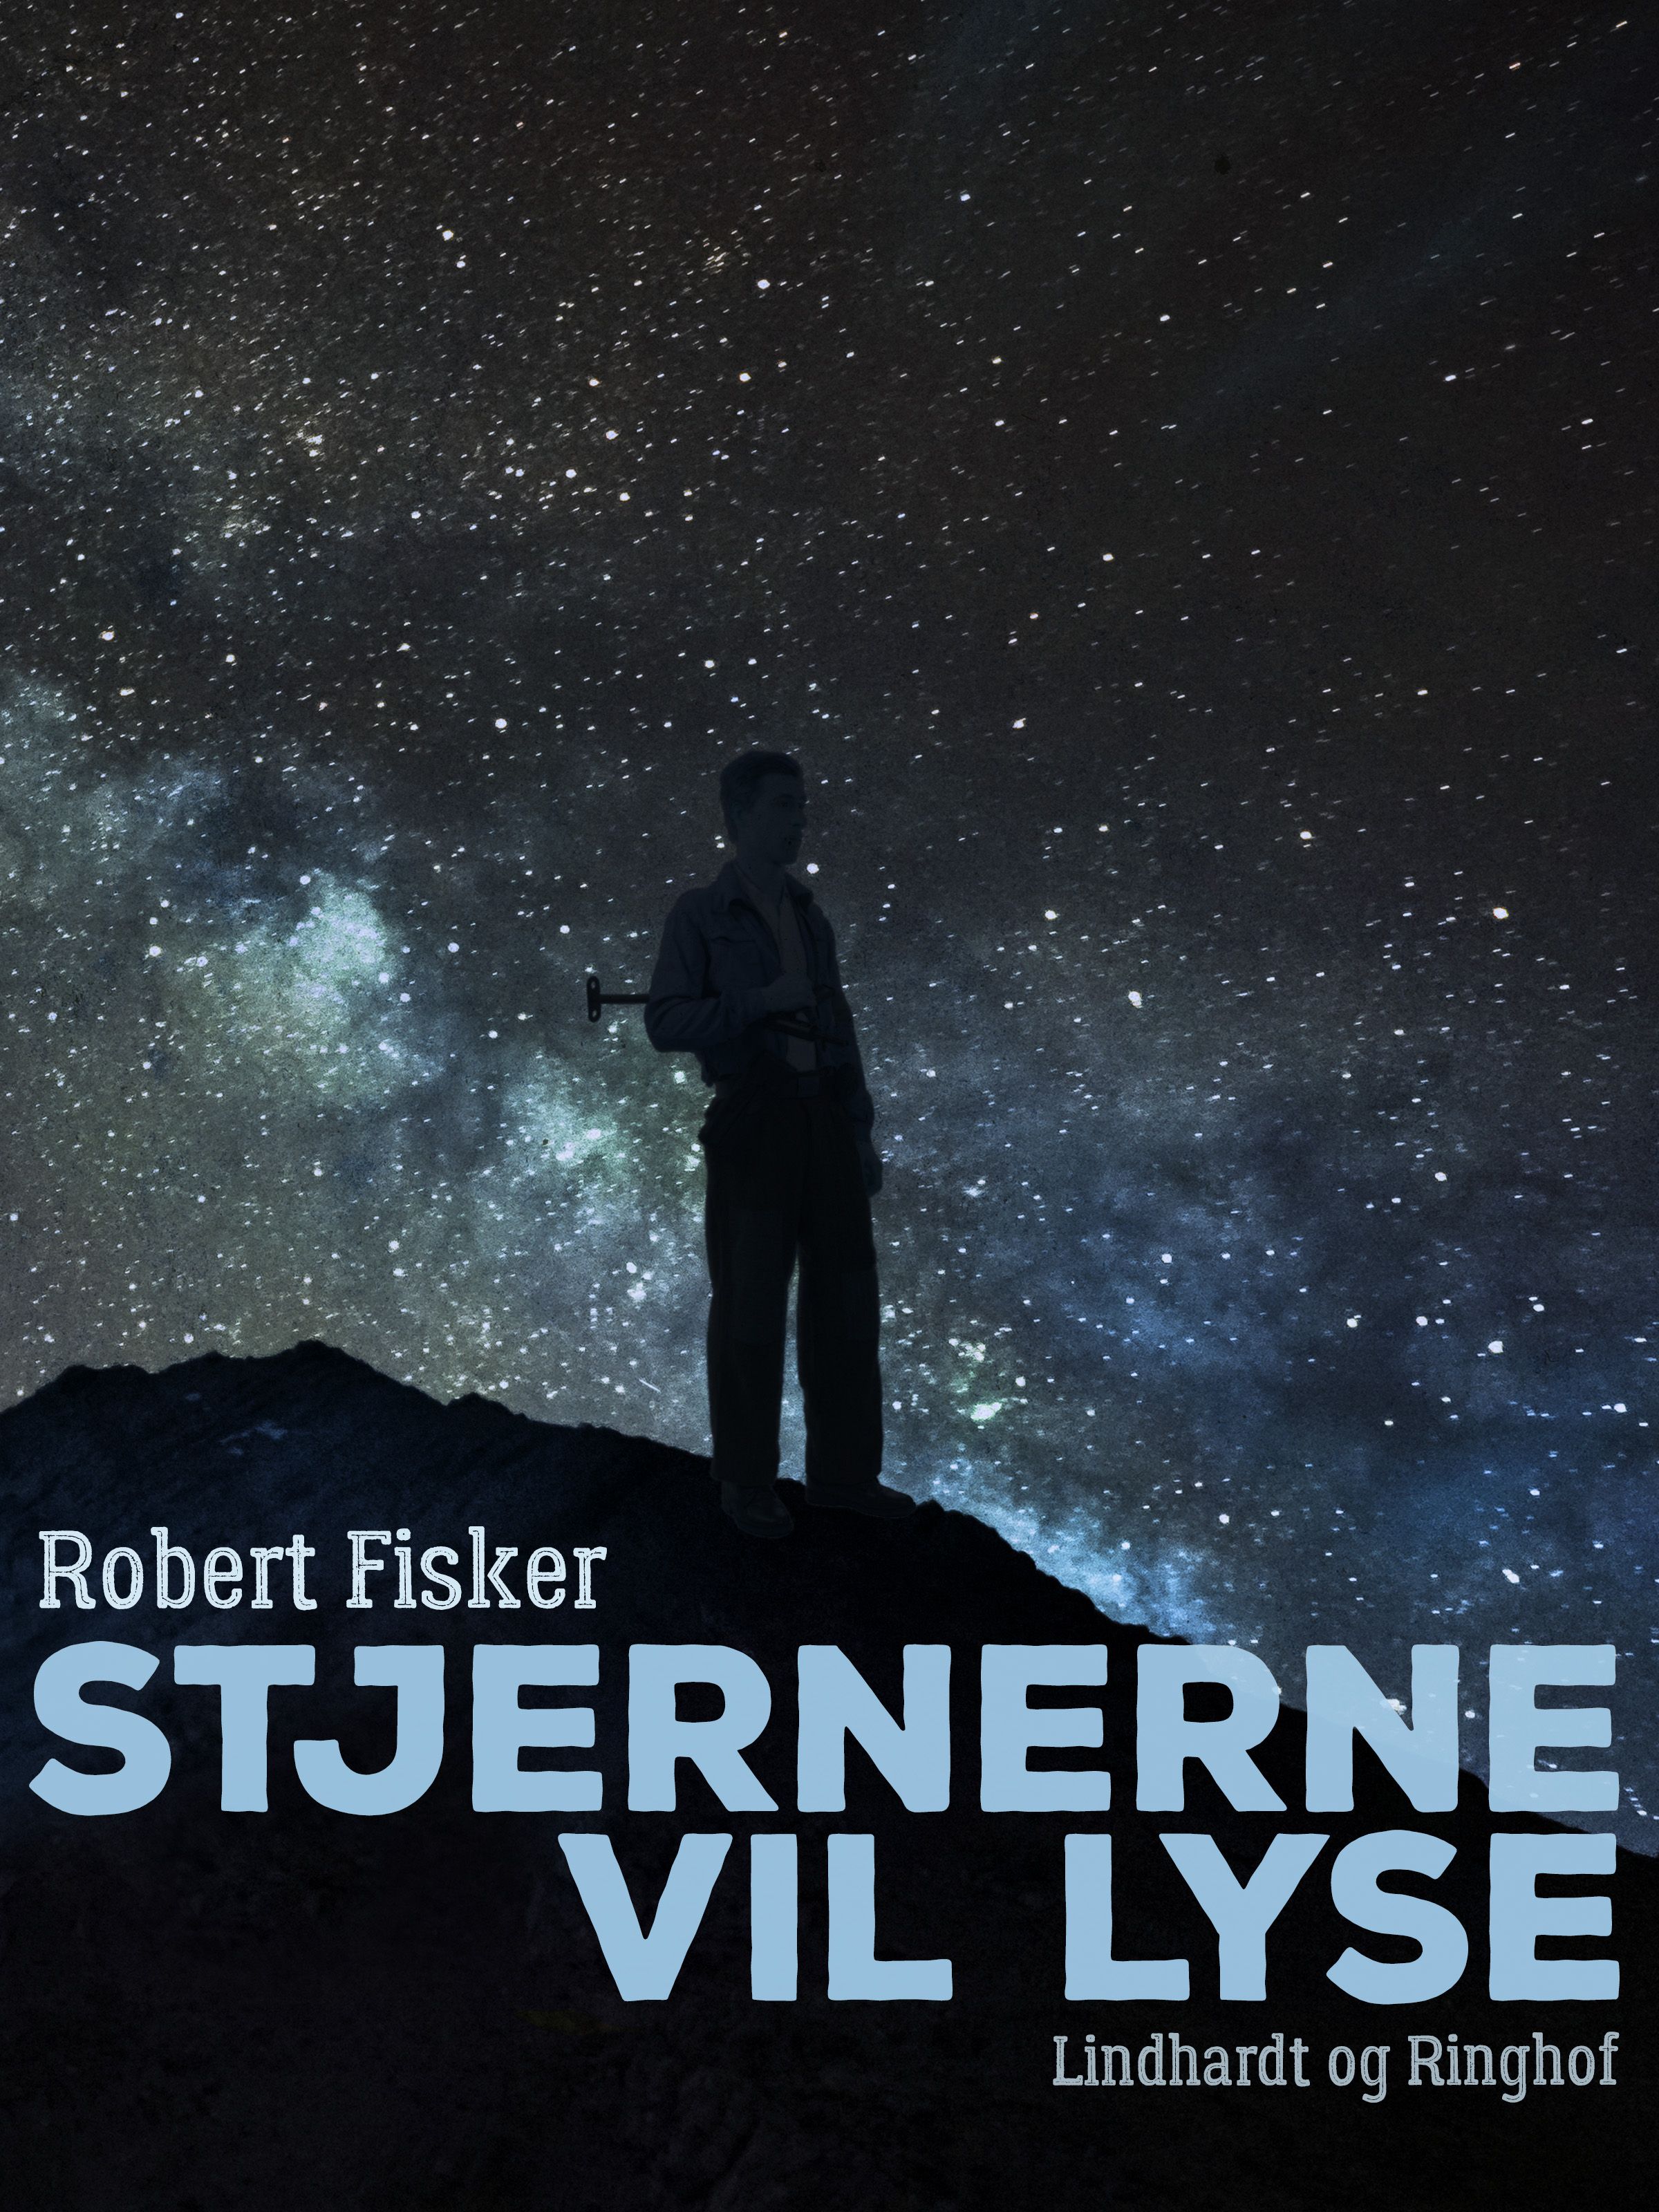 Stjernerne vil lyse, audiobook by Robert Fisker